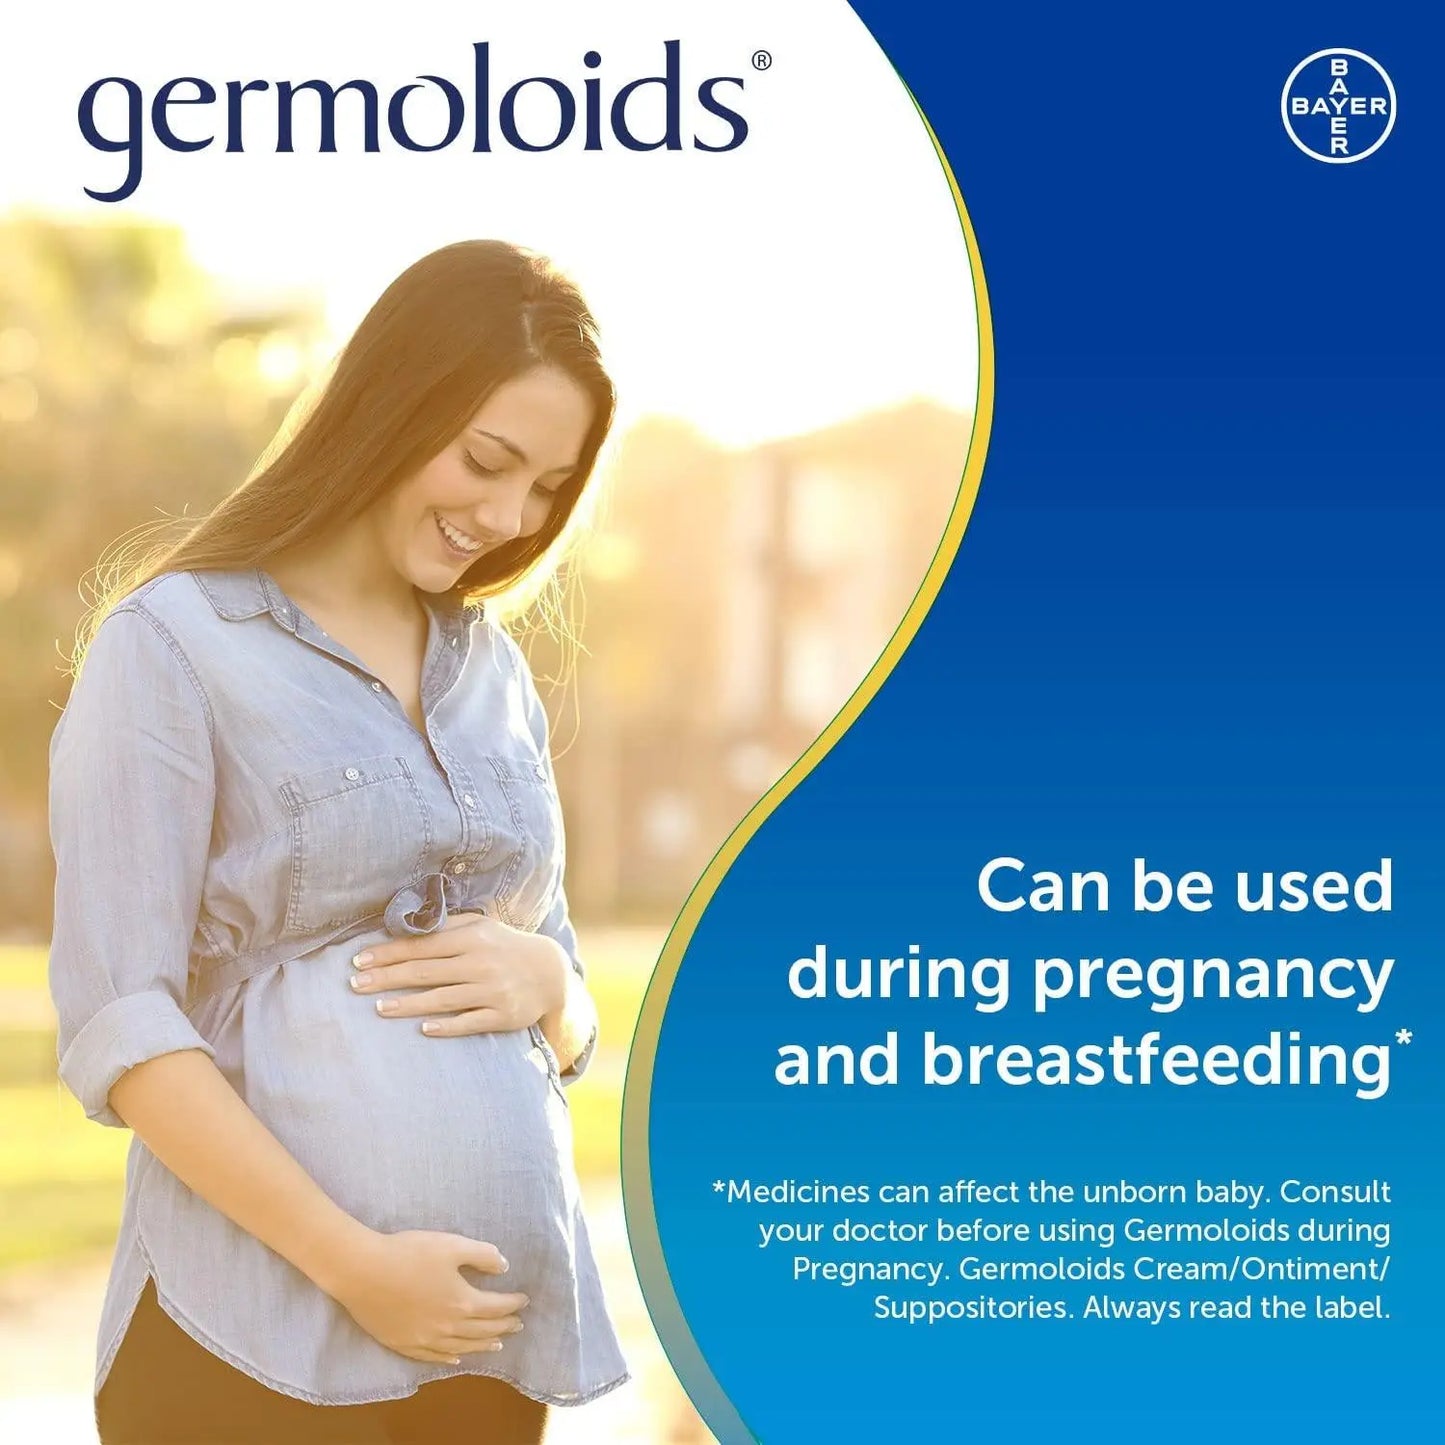 Germoloids Triple Action Haemorrhoids & Piles Ointment 55g